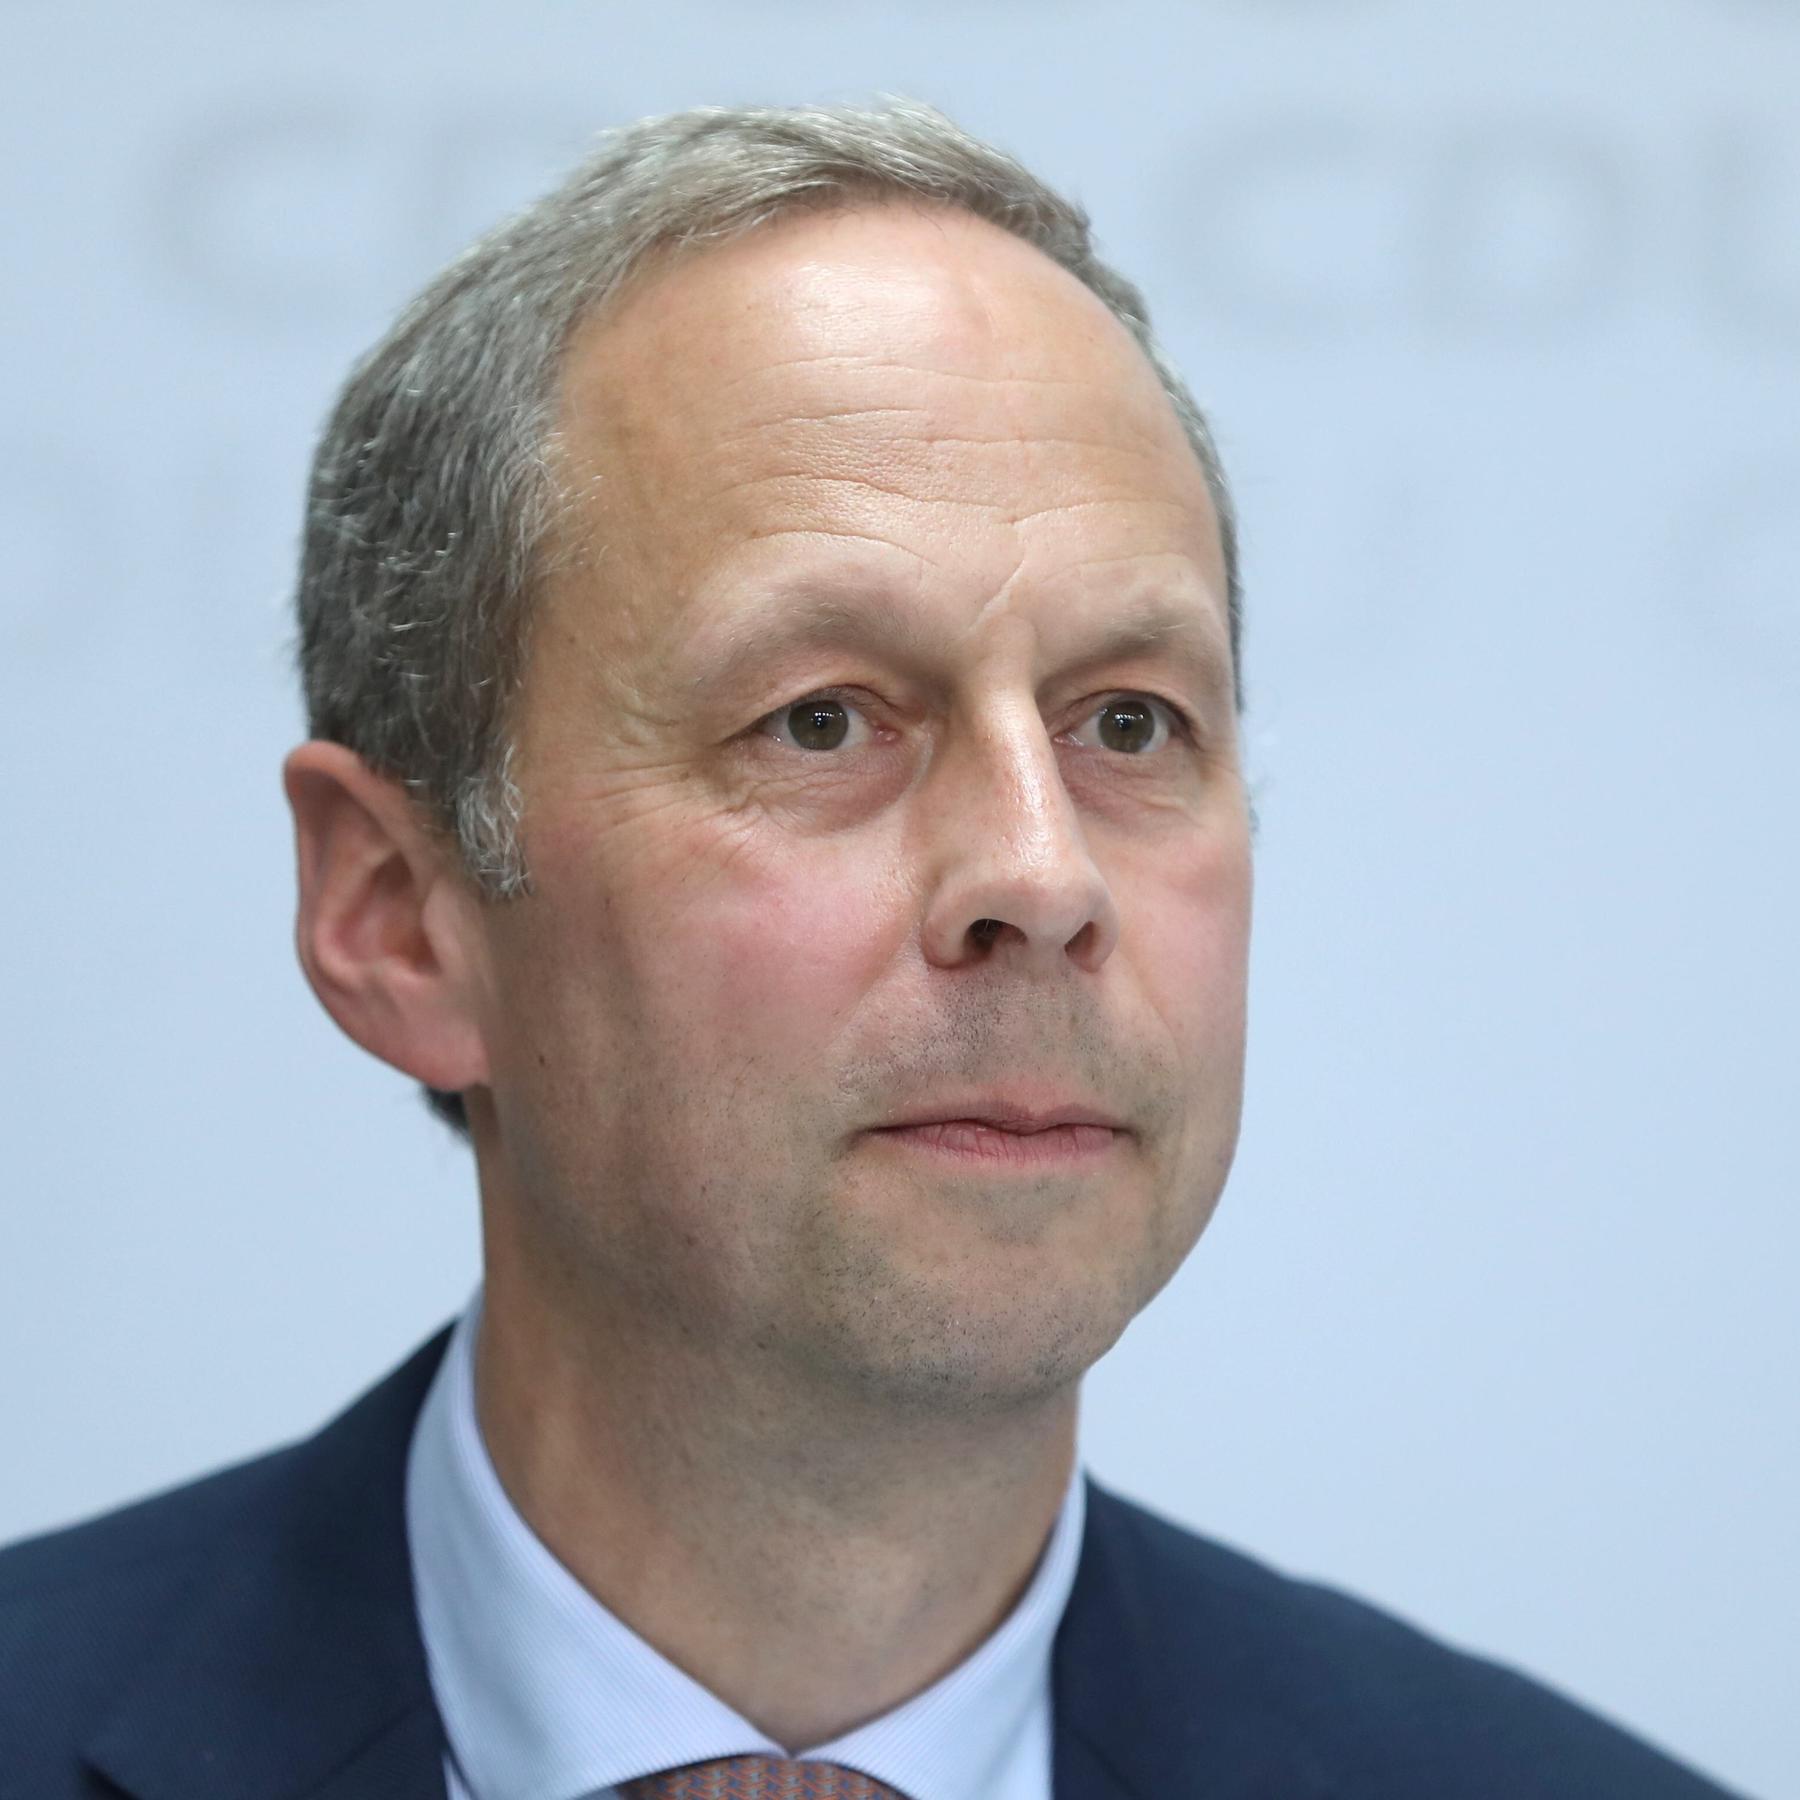 CDU-Politiker Hoppenstedt zum Wachstumschancengesetz: ”Wir haben bislang überhaupt gar nichts blockiert”